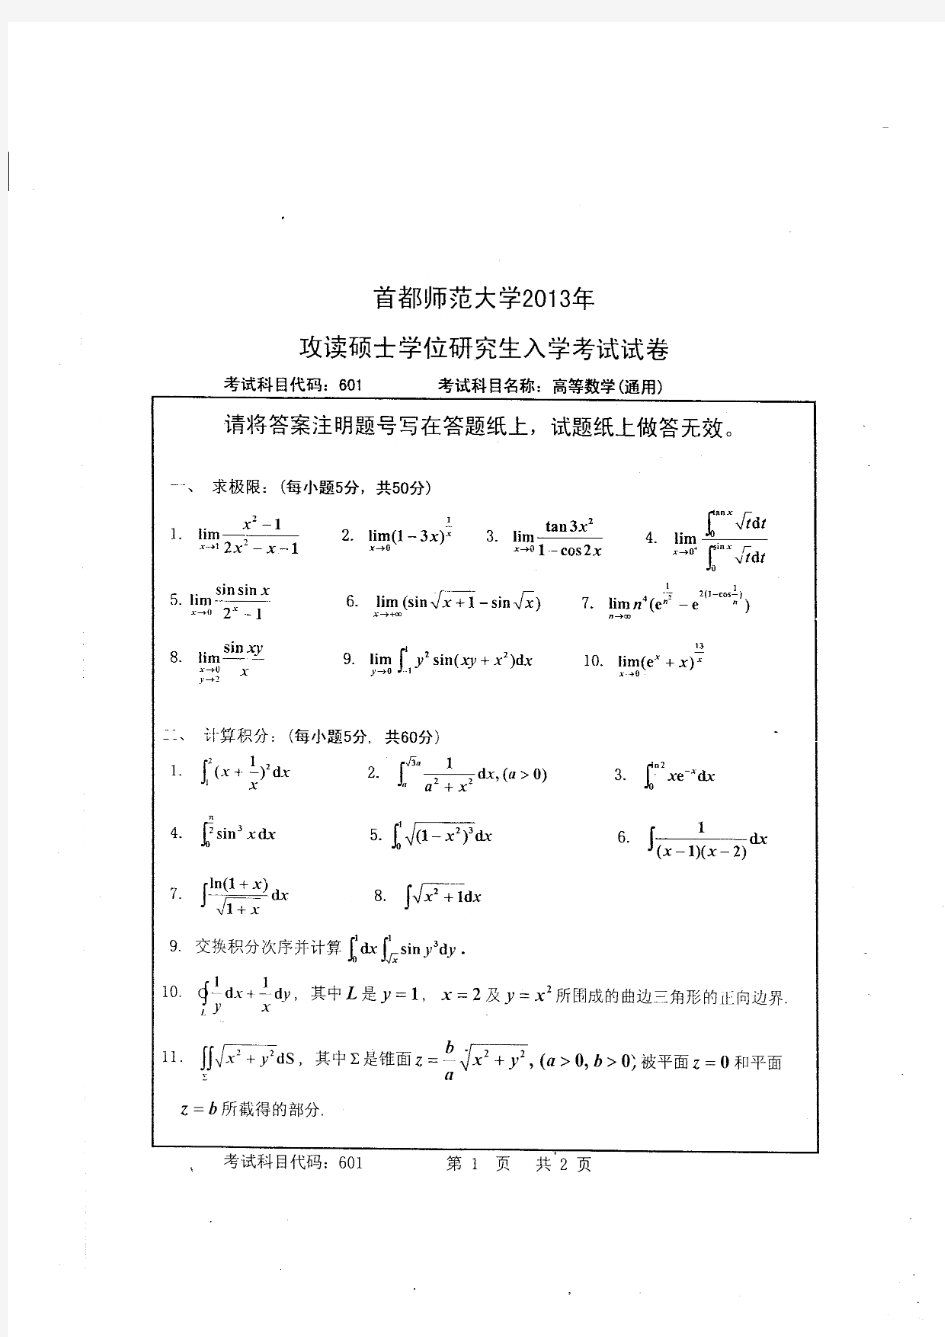 高等数学(通用)2013(601)